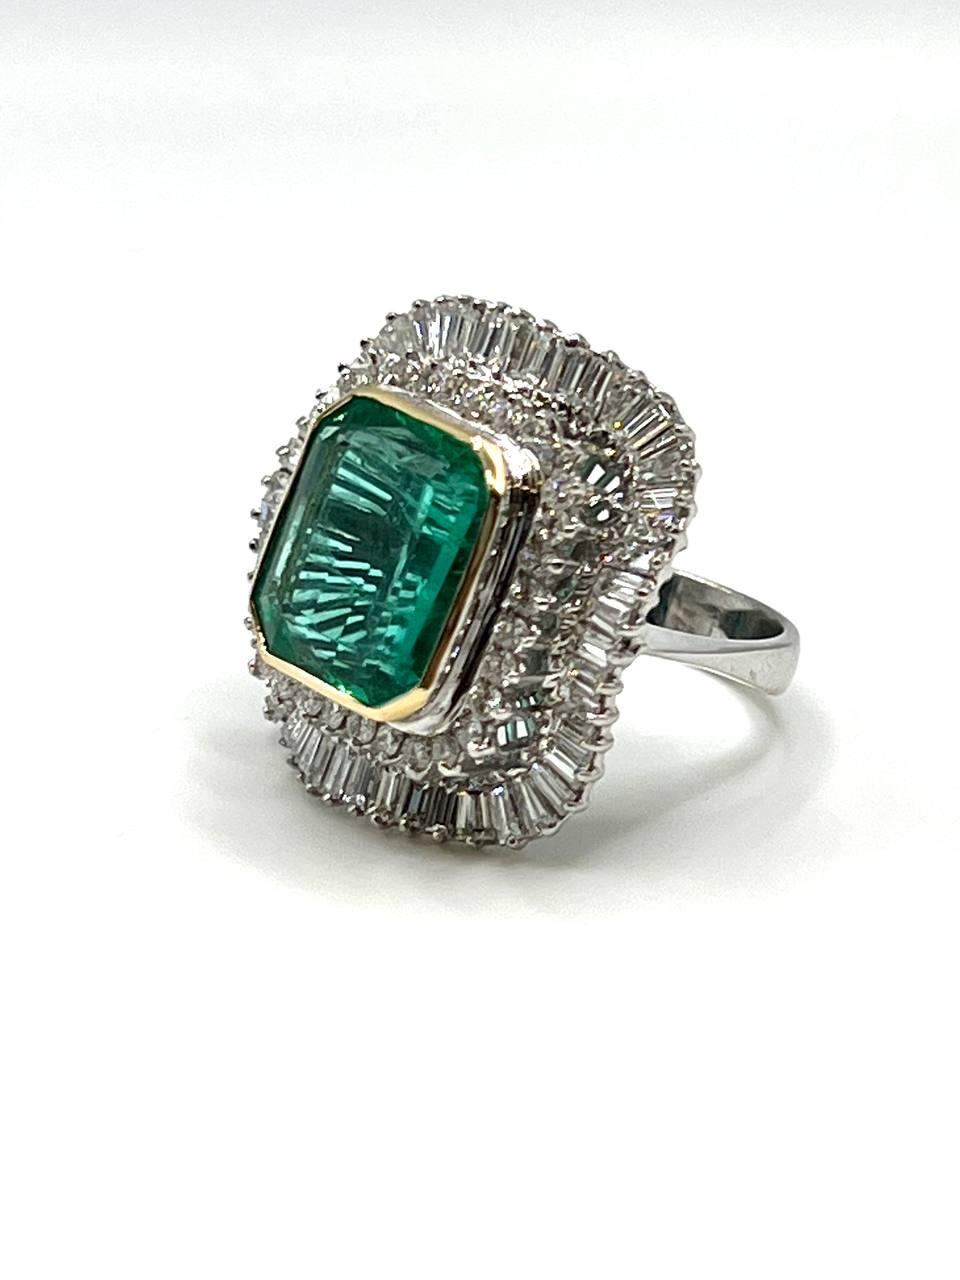 ein eleganter Smaragd- und Diamantring, in der Mitte besetzt mit einem kolumbianischen Smaragd von 8,00 Karat, umgeben von runden Brillanten und Diamanten im Baguetteschliff (ca. 4 Karat)
montiert in 18 Karat Gold, ca. 1950er Jahre.
dieses Stück